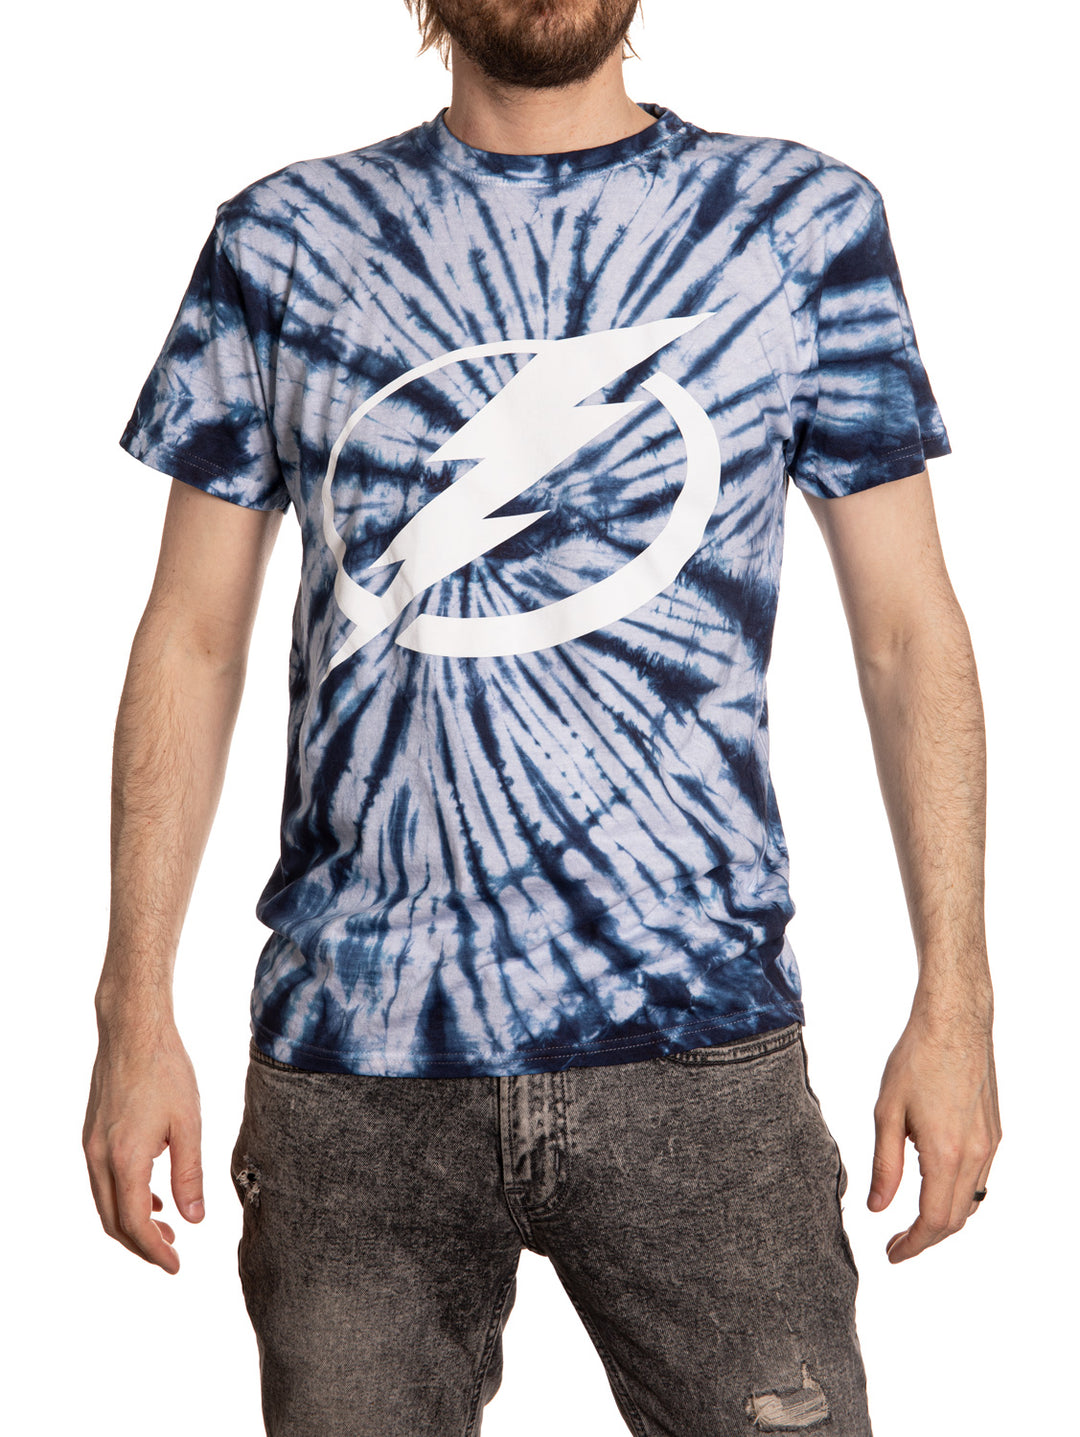 Tampa Bay Lightning Spiral Tie Dye T-Shirt for Men